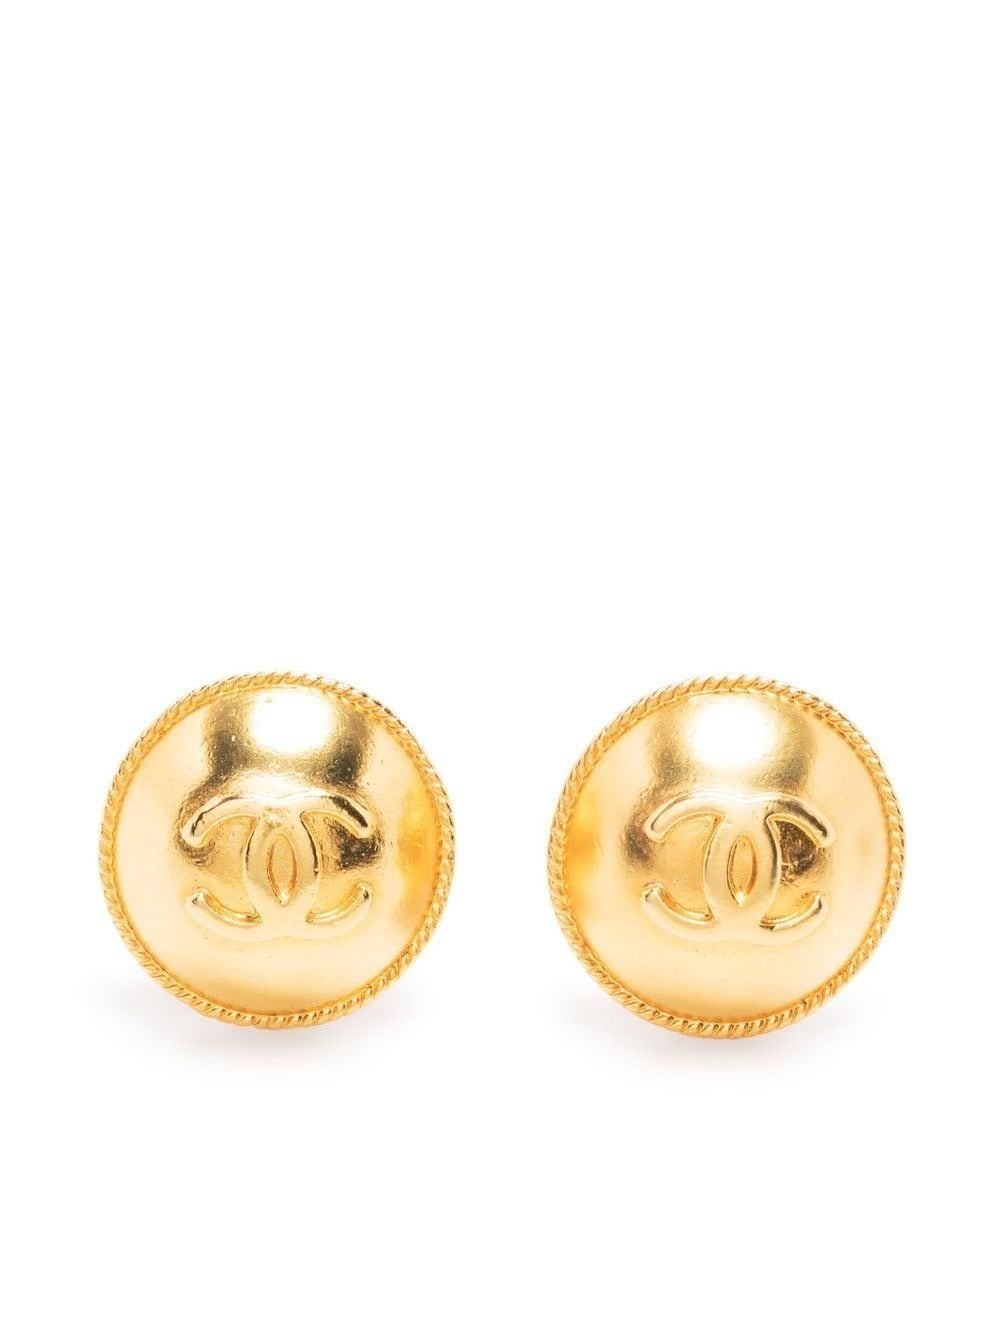 goldfarbene Chanel-Ohrringe zum Anstecken aus dem Jahr 1995 mit folgendem Design: goldfarbenes Logo, Clipverschluss, hintere Plakette mit entkerntem Chanel-Logo am Clip. 
Diese Ohrringe werden als Paar geliefert.
Etwa 1995
Durchmesser: 0,8 Zoll (2